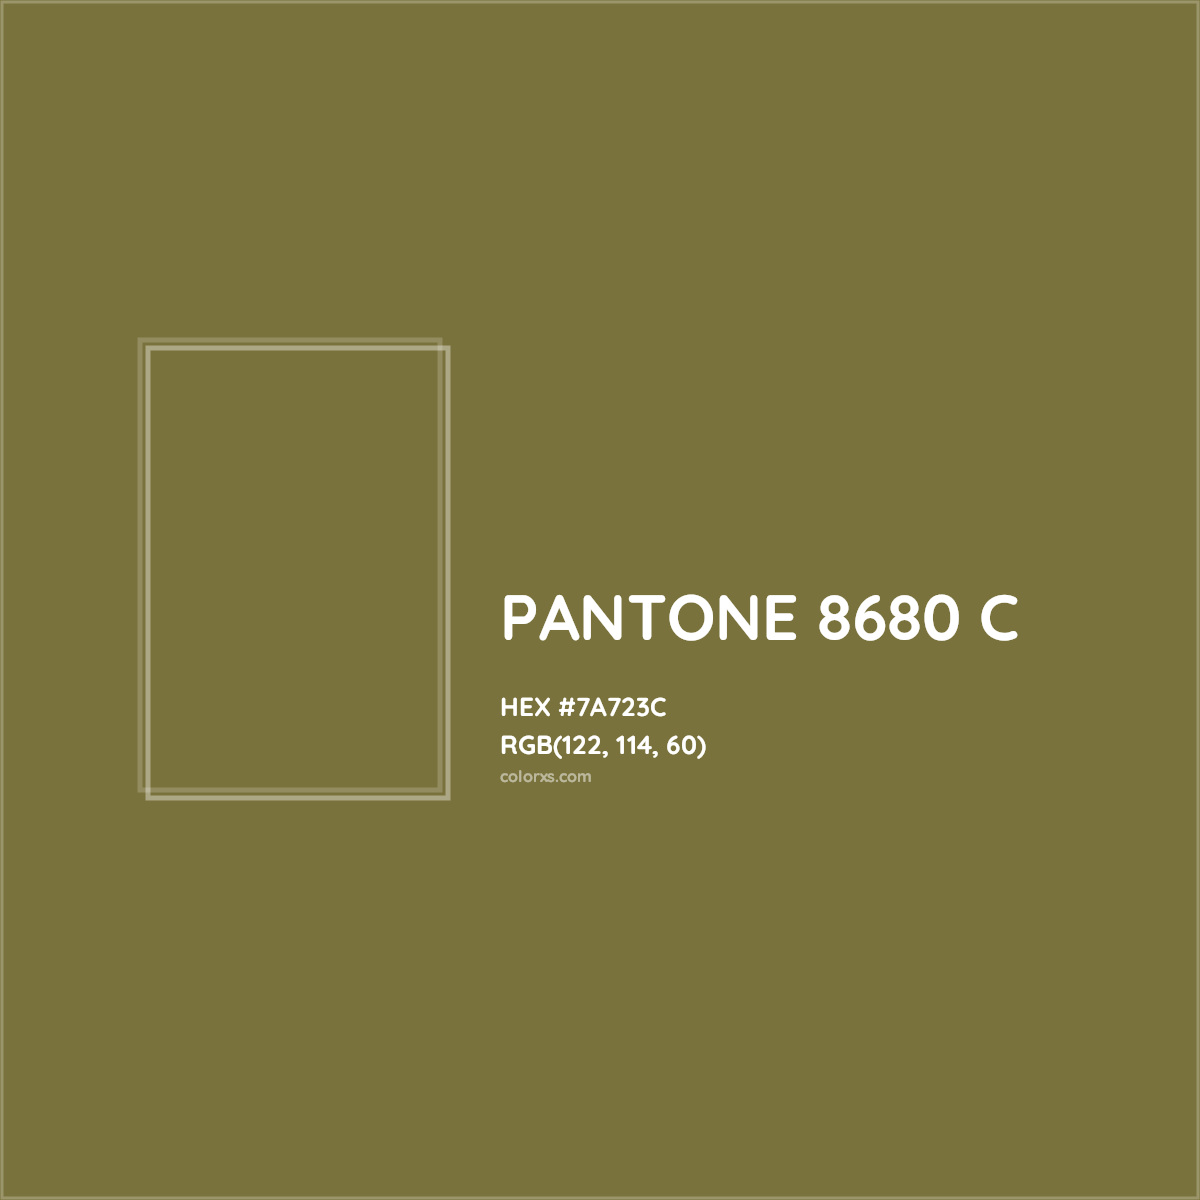 HEX #7A723C PANTONE 8680 C CMS Pantone PMS - Color Code